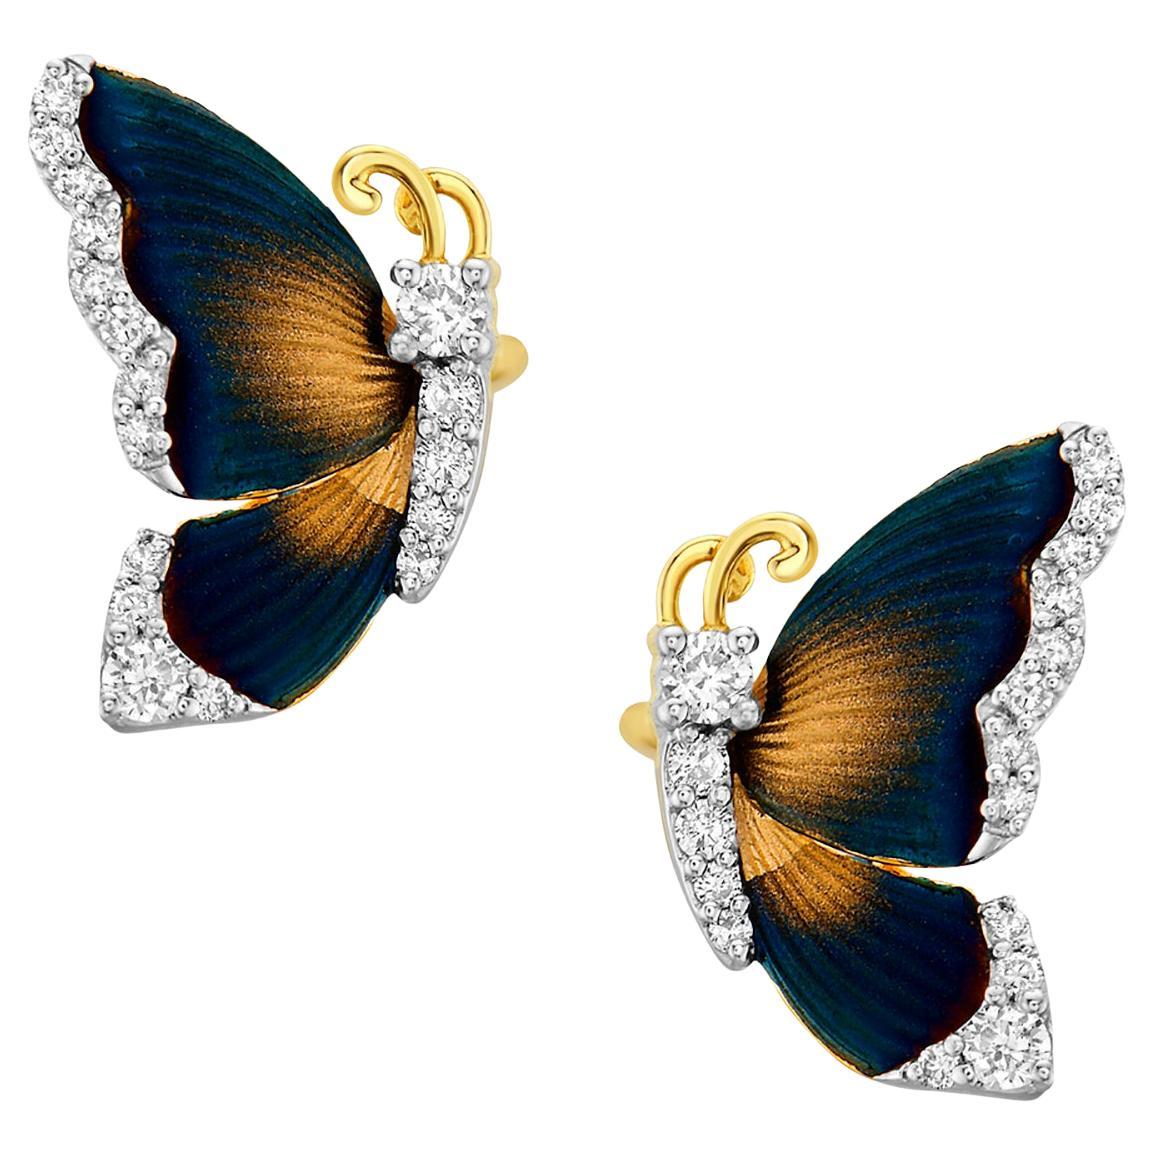 Schnitzte Ohrstecker in Schmetterlingsform mit Diamanten aus 14 Karat Gelbgold